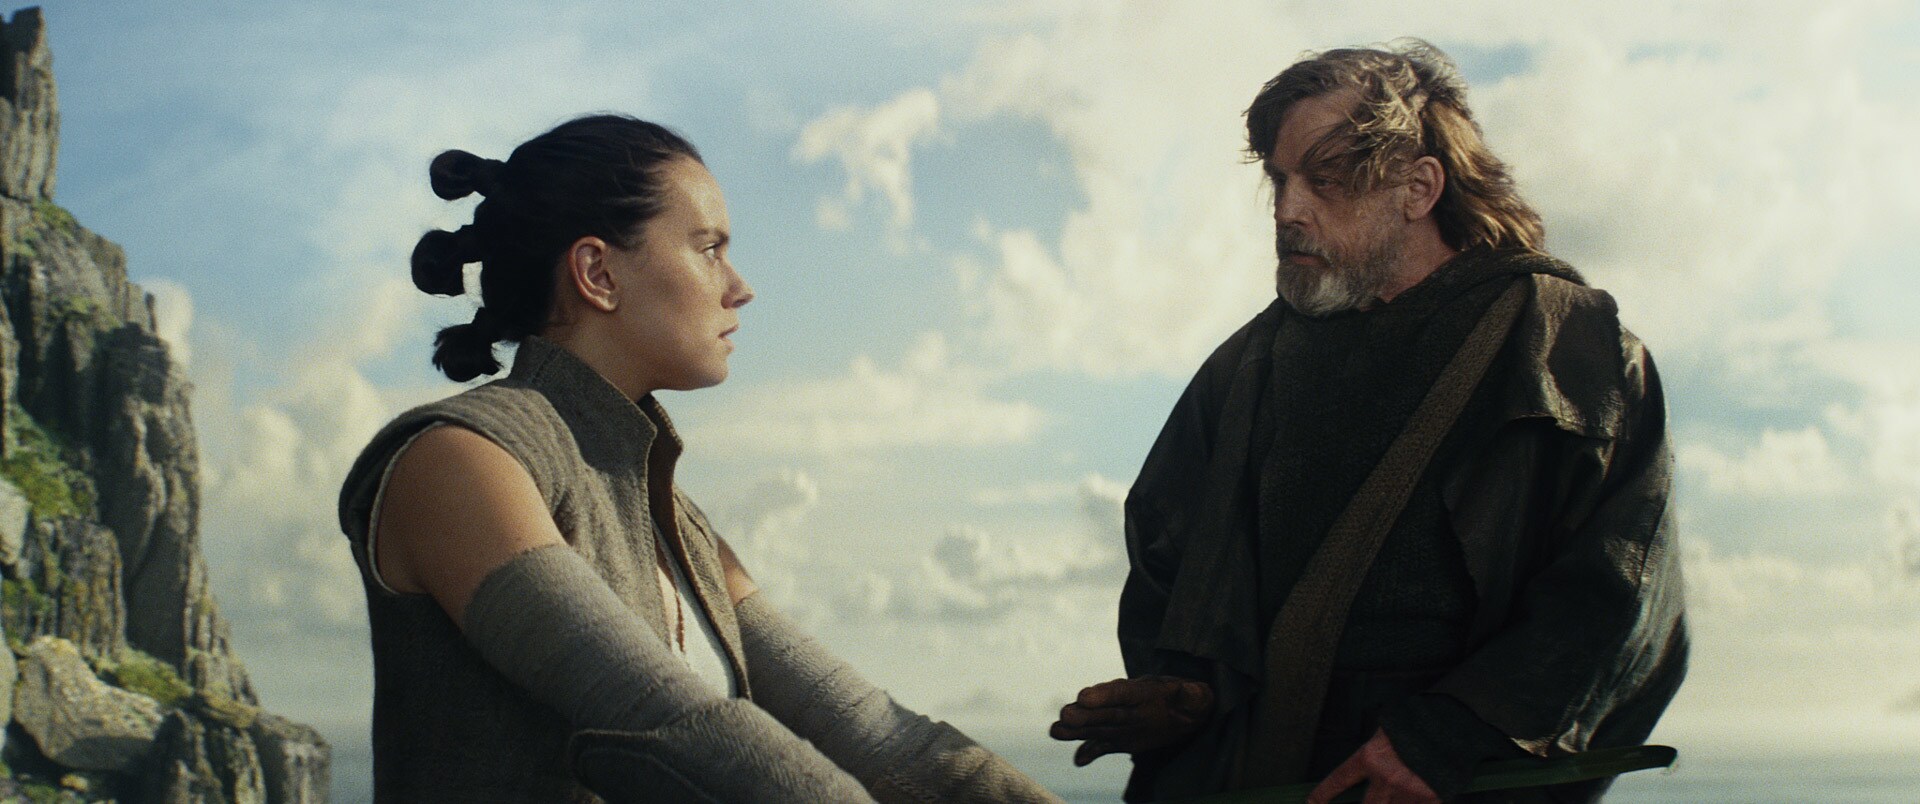 Star Wars: The Last Jedi (Episode VIII) movie photo